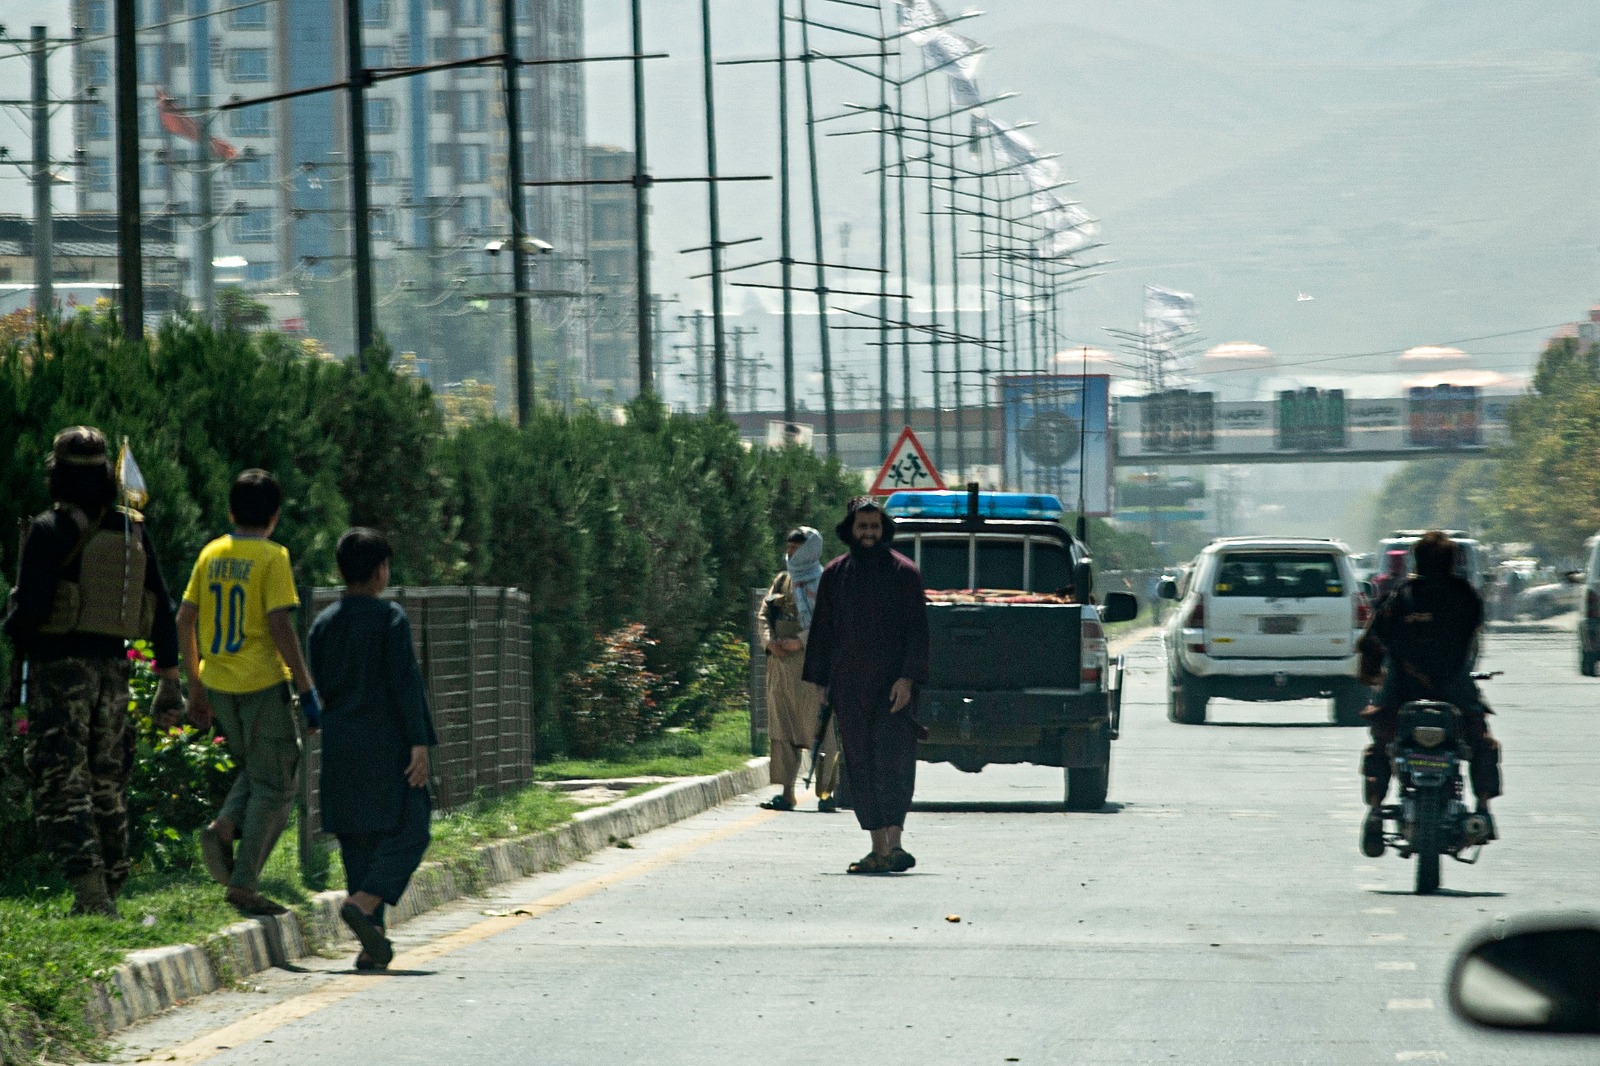 مقاتلون من طالبان يؤمننون محيط السفارة الروسية في كابول عقب هجوم انتحاري استهدفها. كابول، أفغانستان. 5 سبتمبر 2022